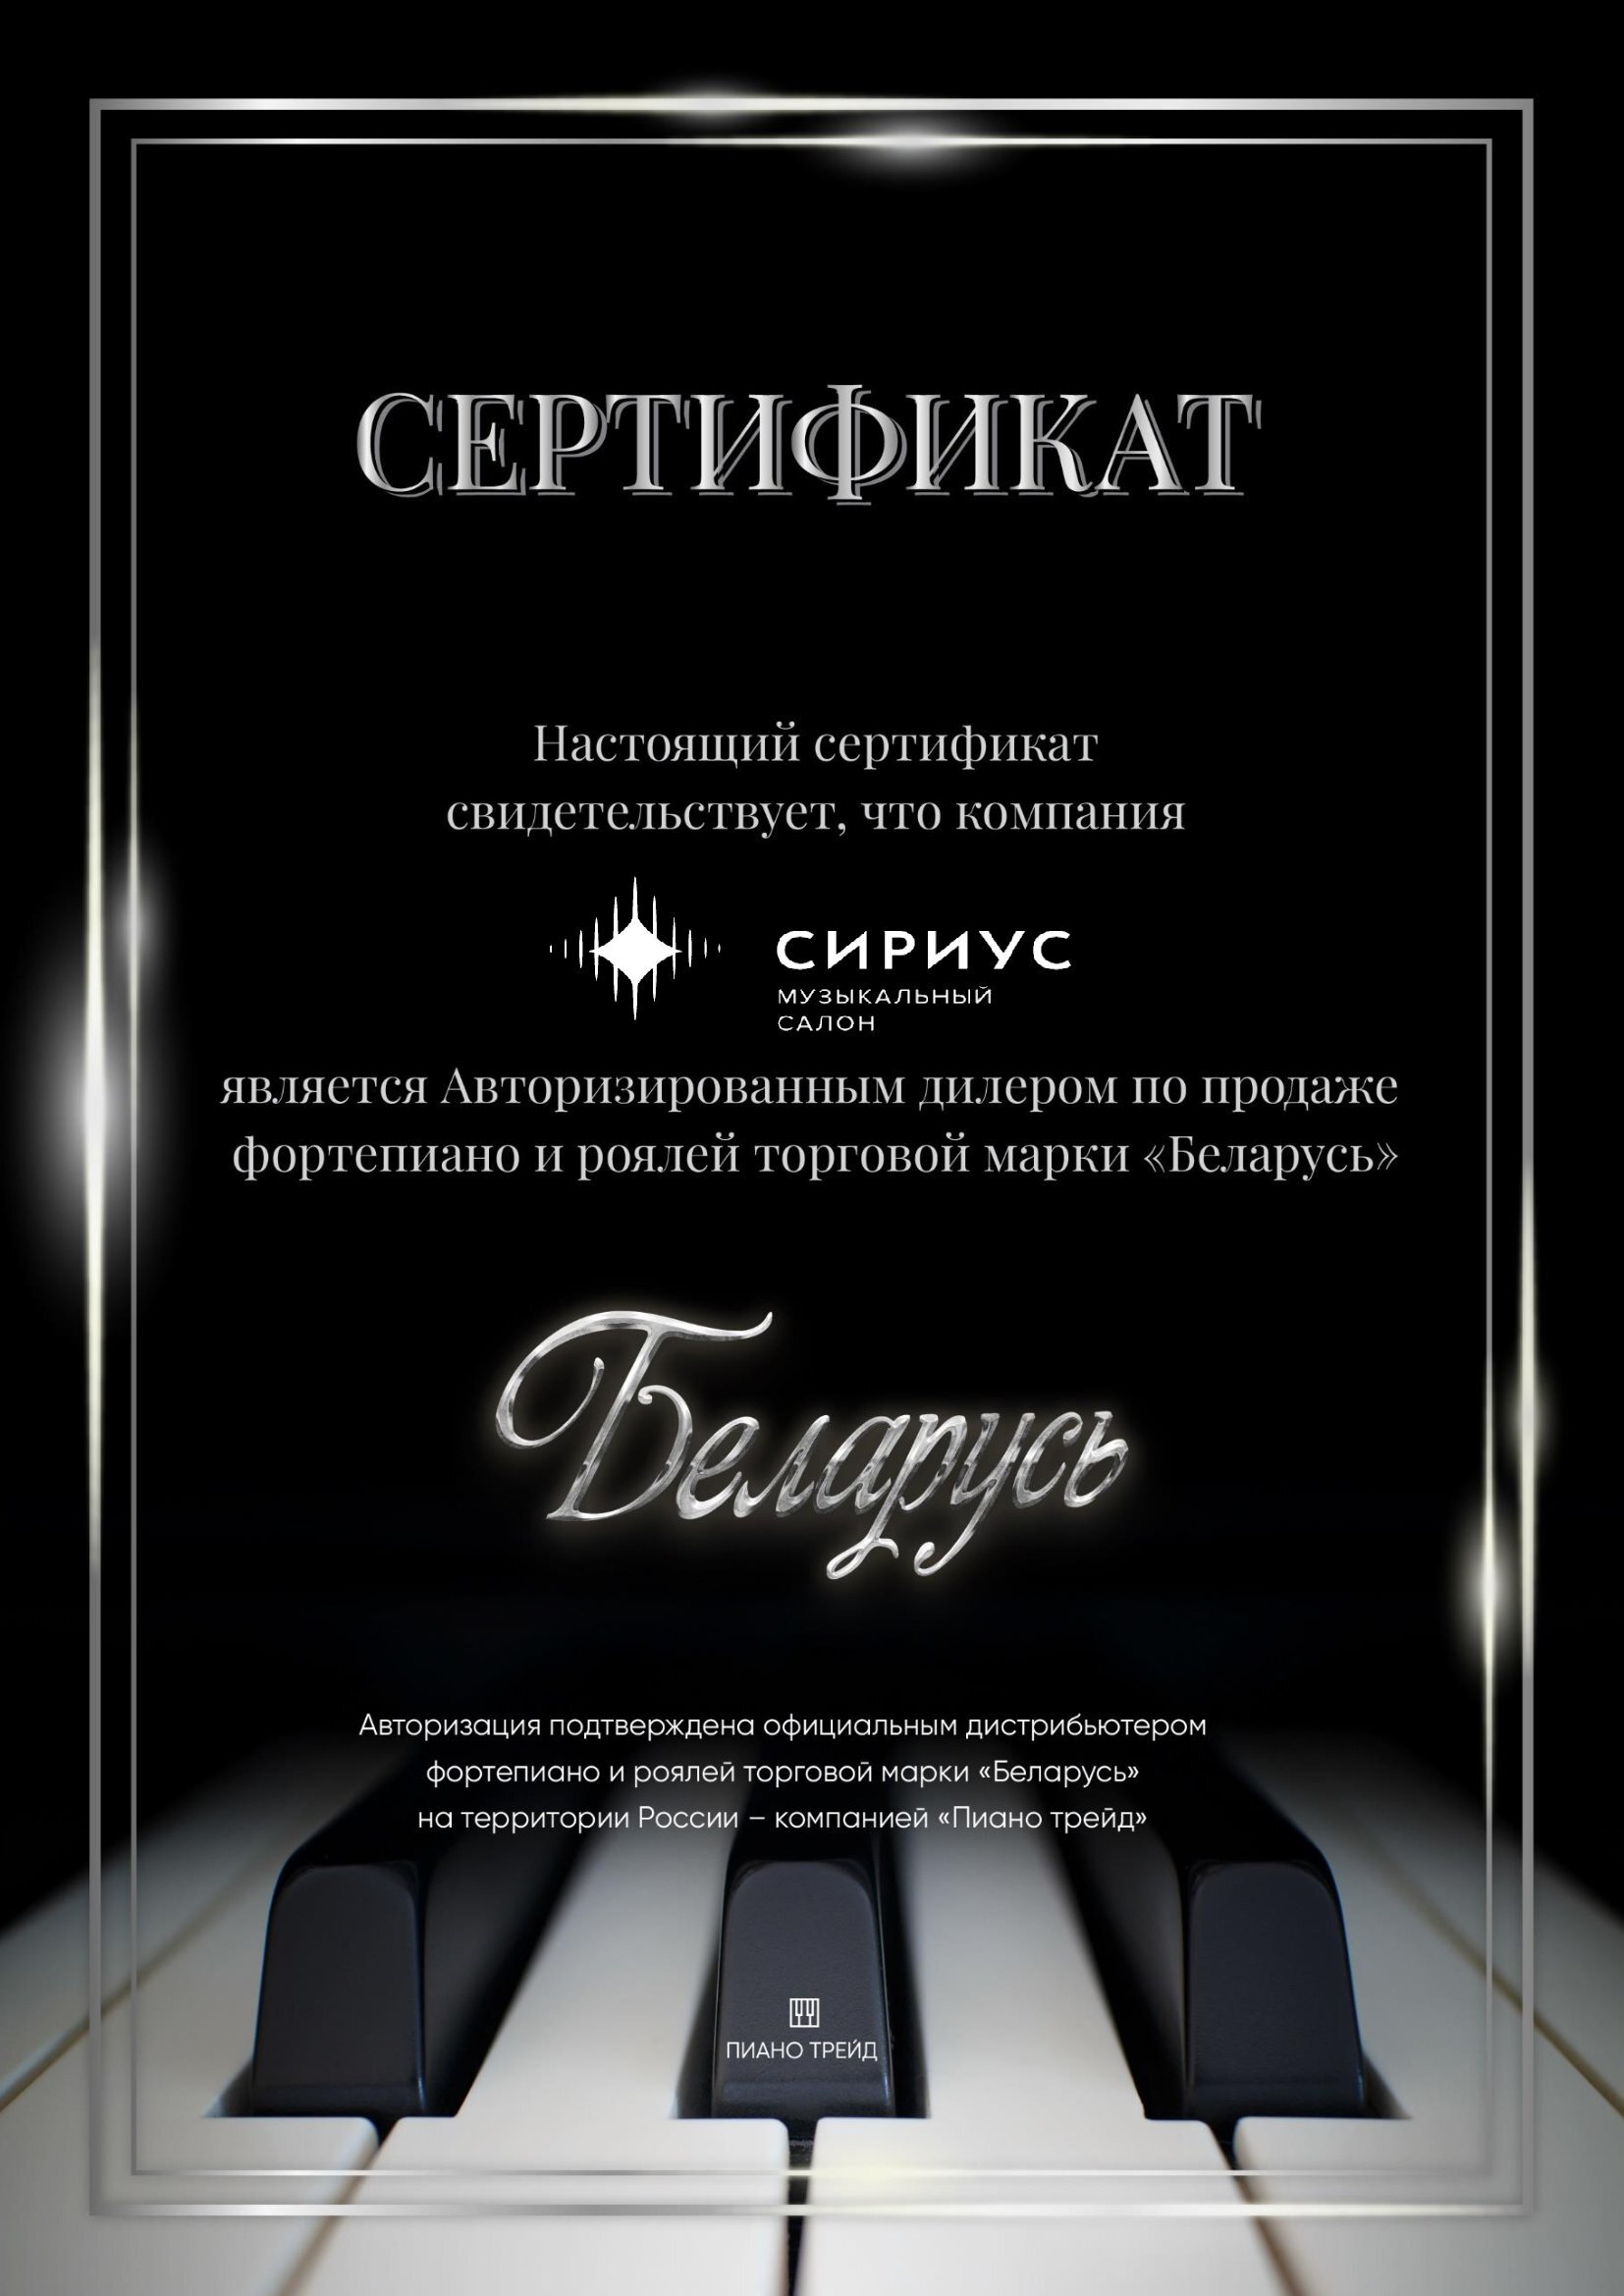 Беларусь В-121BK акустическое пианино 122 см. Цвет черный, полированное 